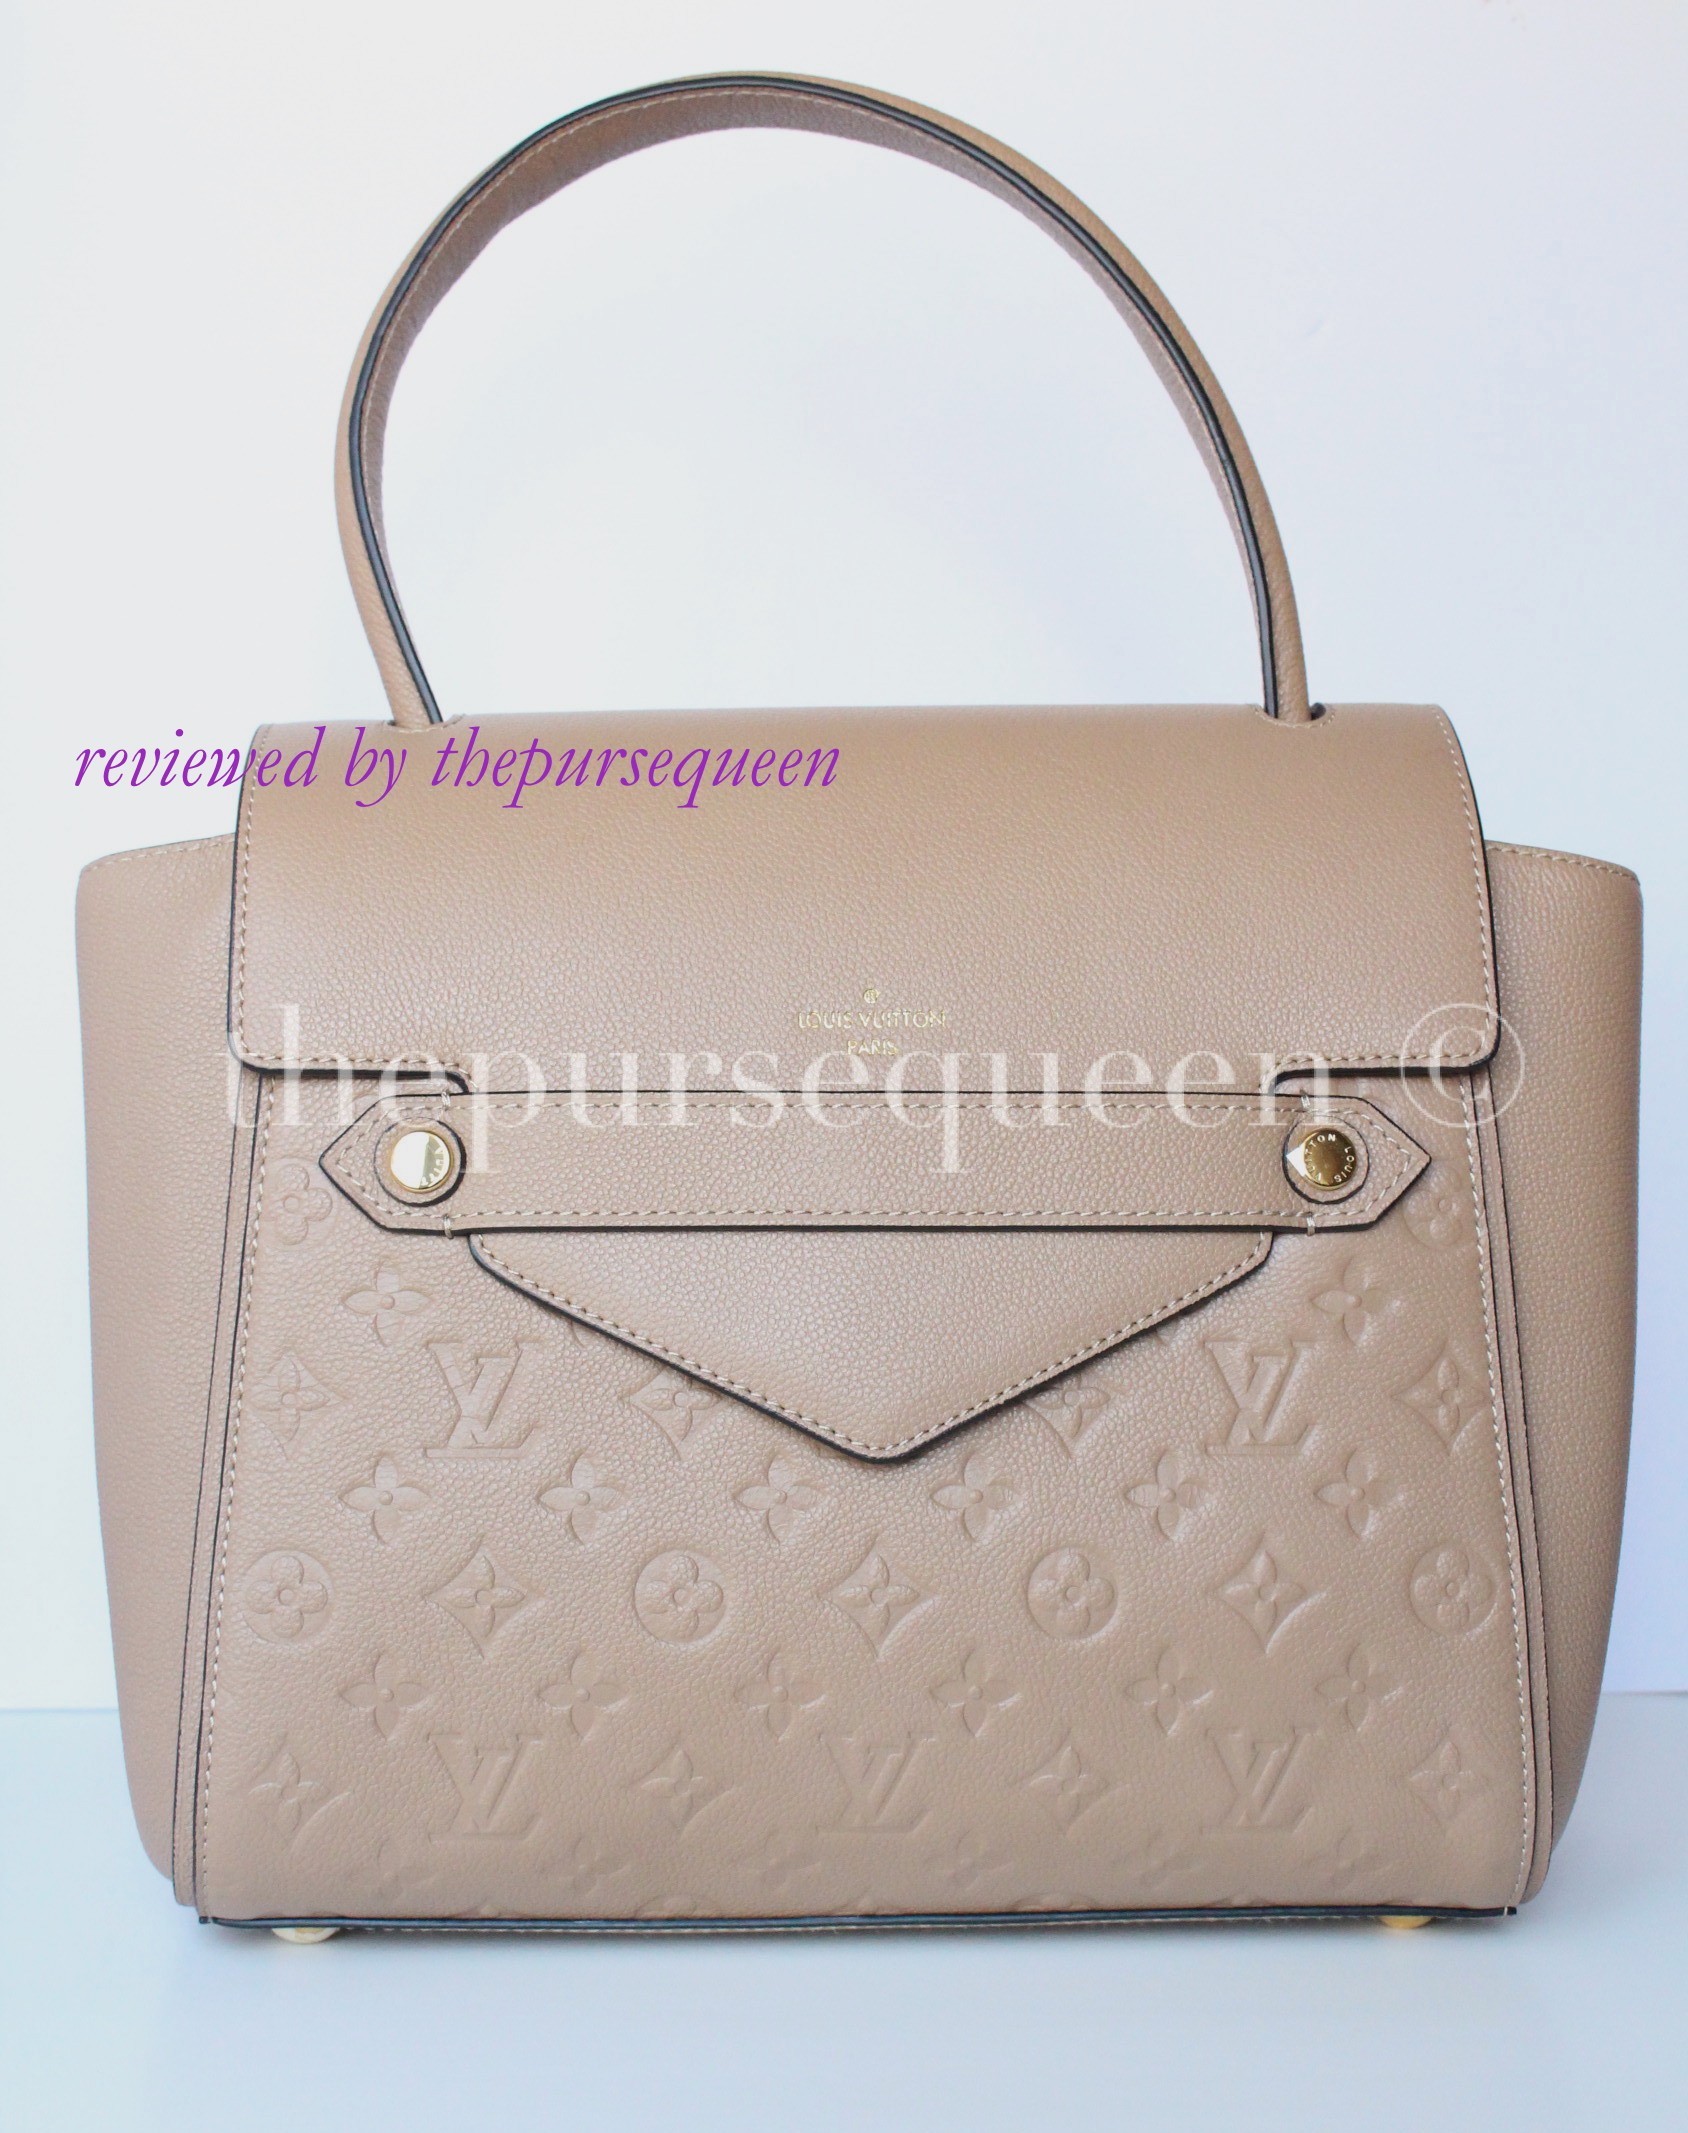 Louis Vuitton Trocadero Handbag in Empreinte Replica Review - Authentic & Replica Bags/Handbags ...